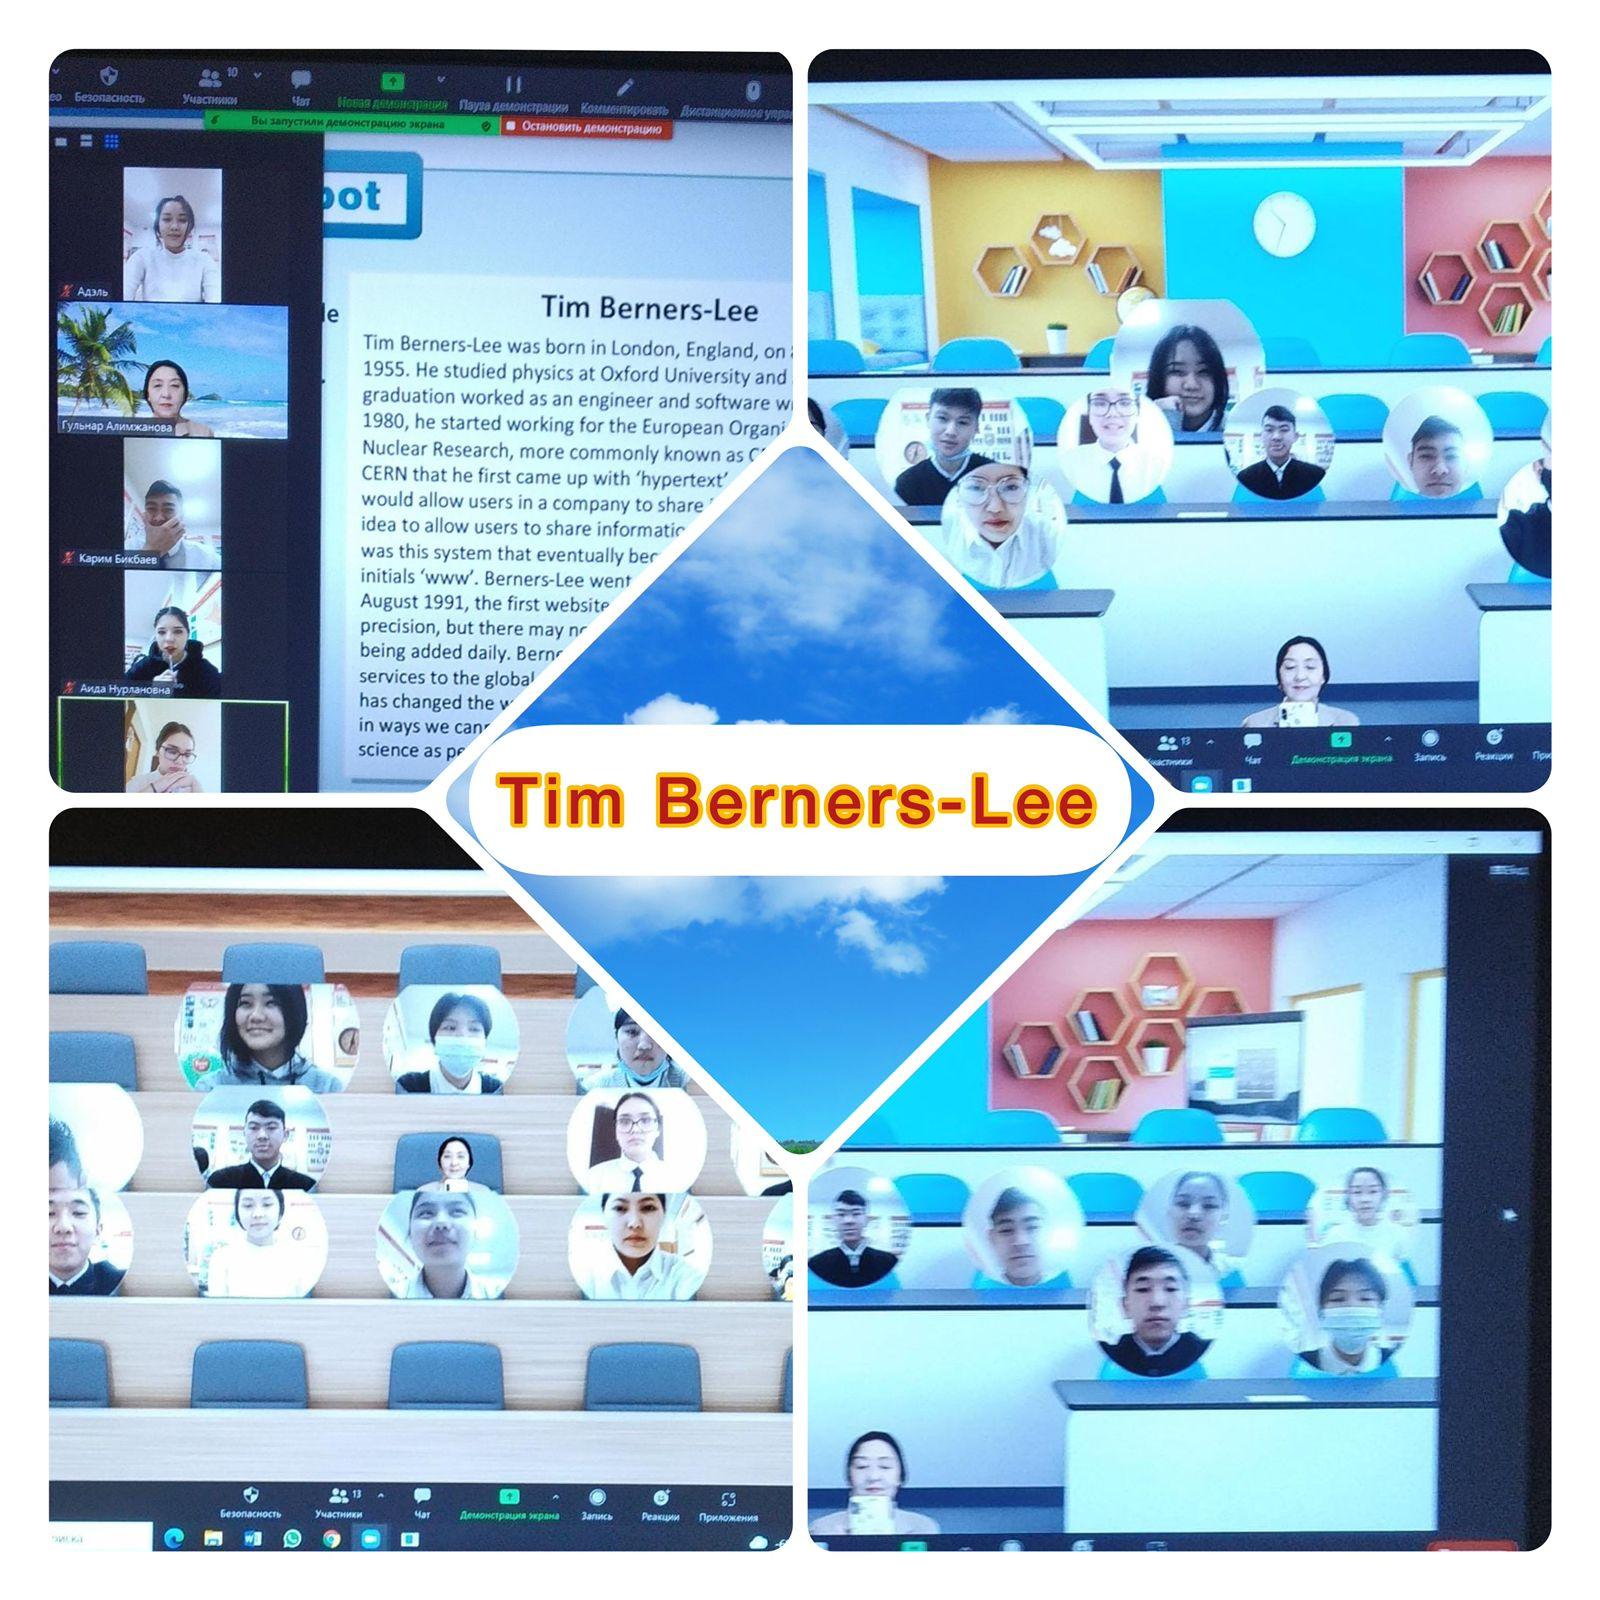 “Tim Berners Lee”